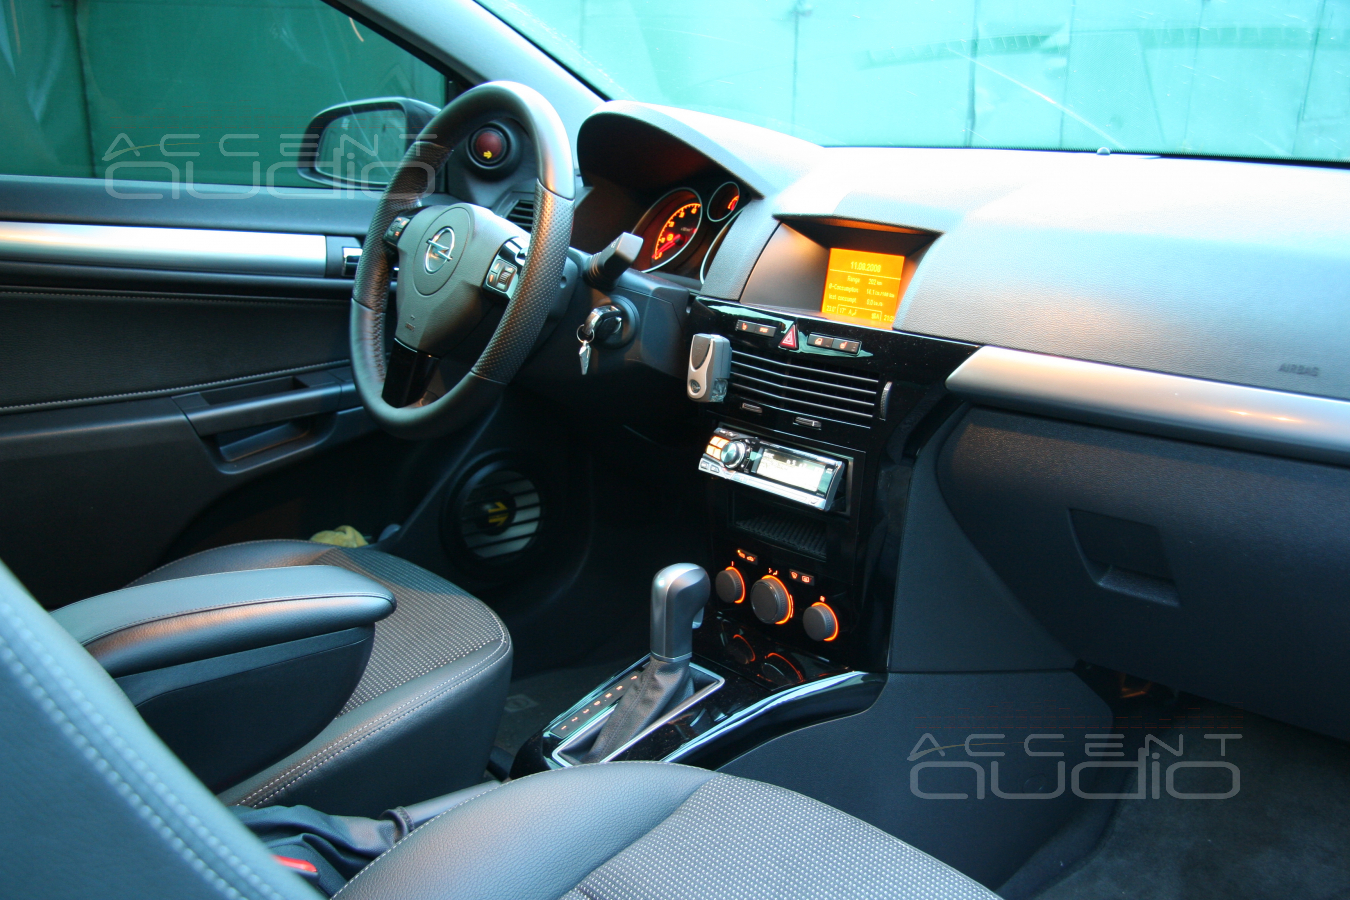 Скромное обаяние Opel Astra: Alpine 9855 + PolkAudio MM6 + Eton EC 500.4